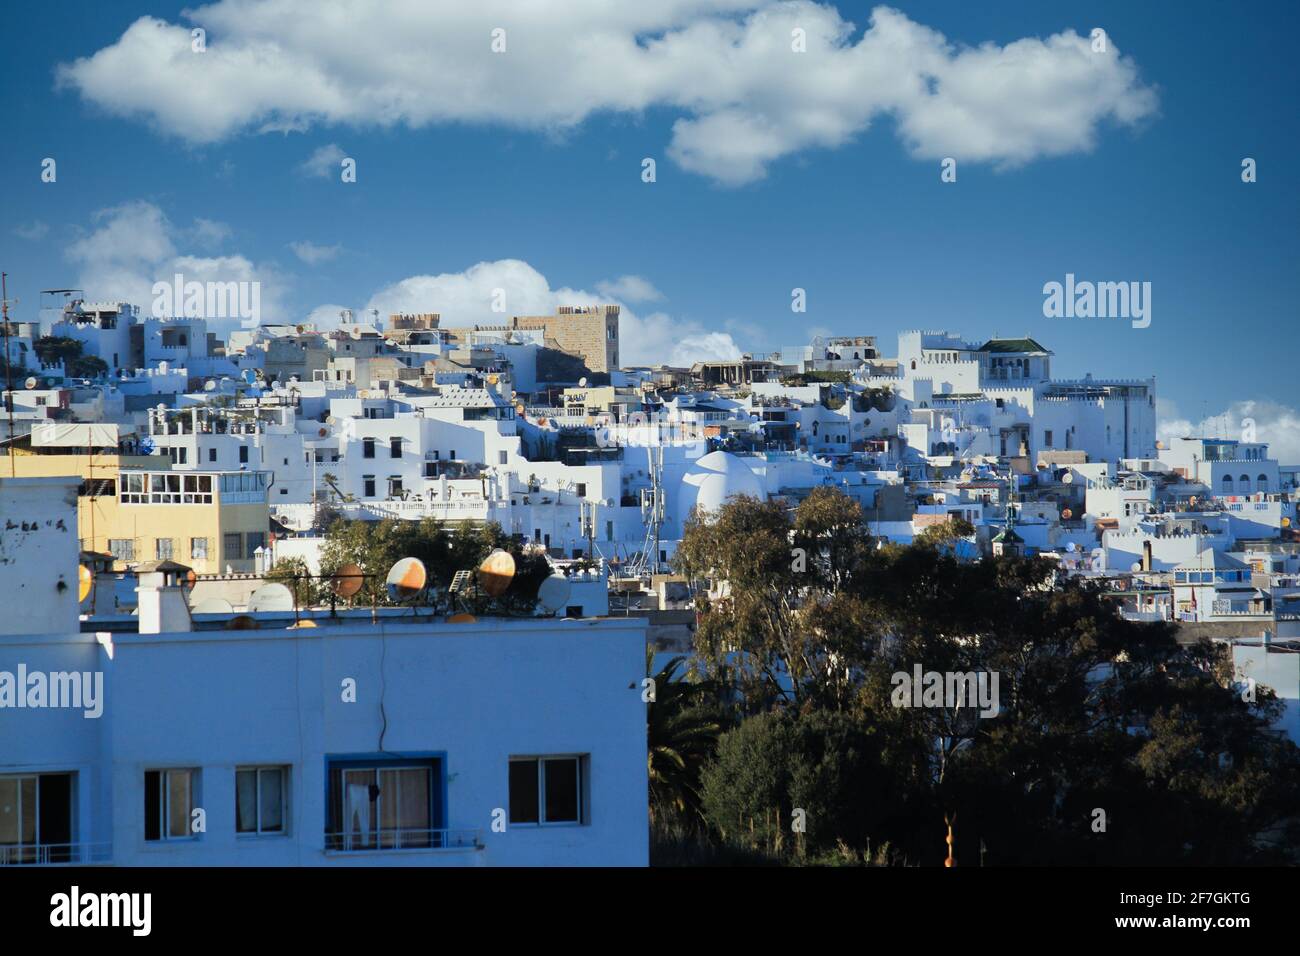 Une photographie aérienne de la ville de Tanger au Maroc avec de nombreux bâtiments Banque D'Images